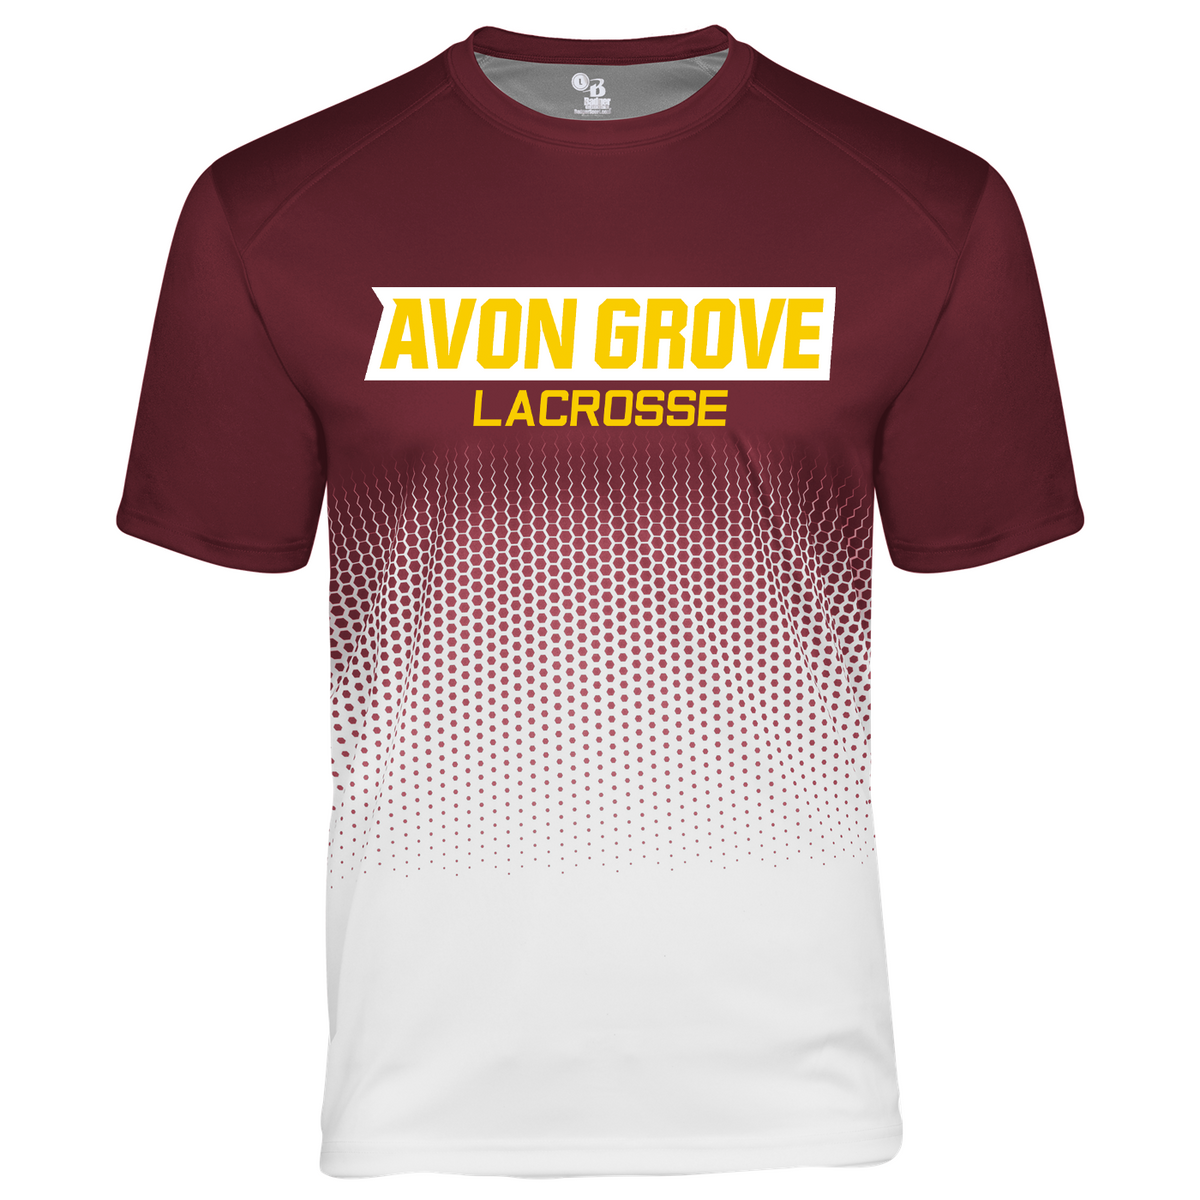 Avon Grove Lacrosse Hex 2.0 Tee